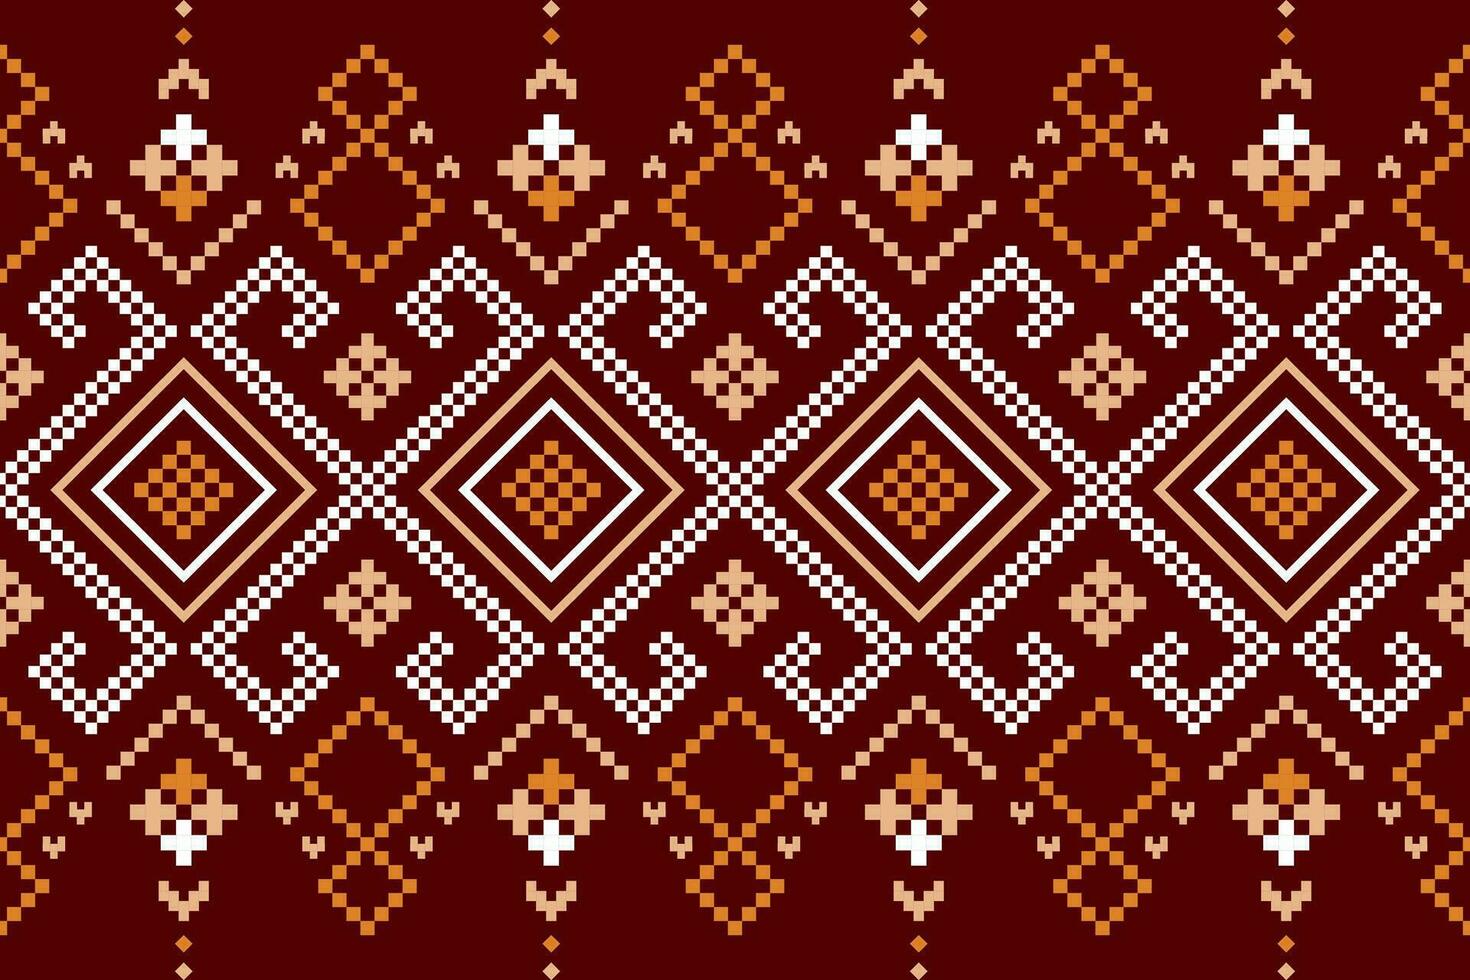 rouge traditionnel ethnique modèle paisley fleur ikat Contexte abstrait aztèque africain indonésien Indien sans couture modèle pour en tissu impression tissu robe tapis rideaux et sarong vecteur